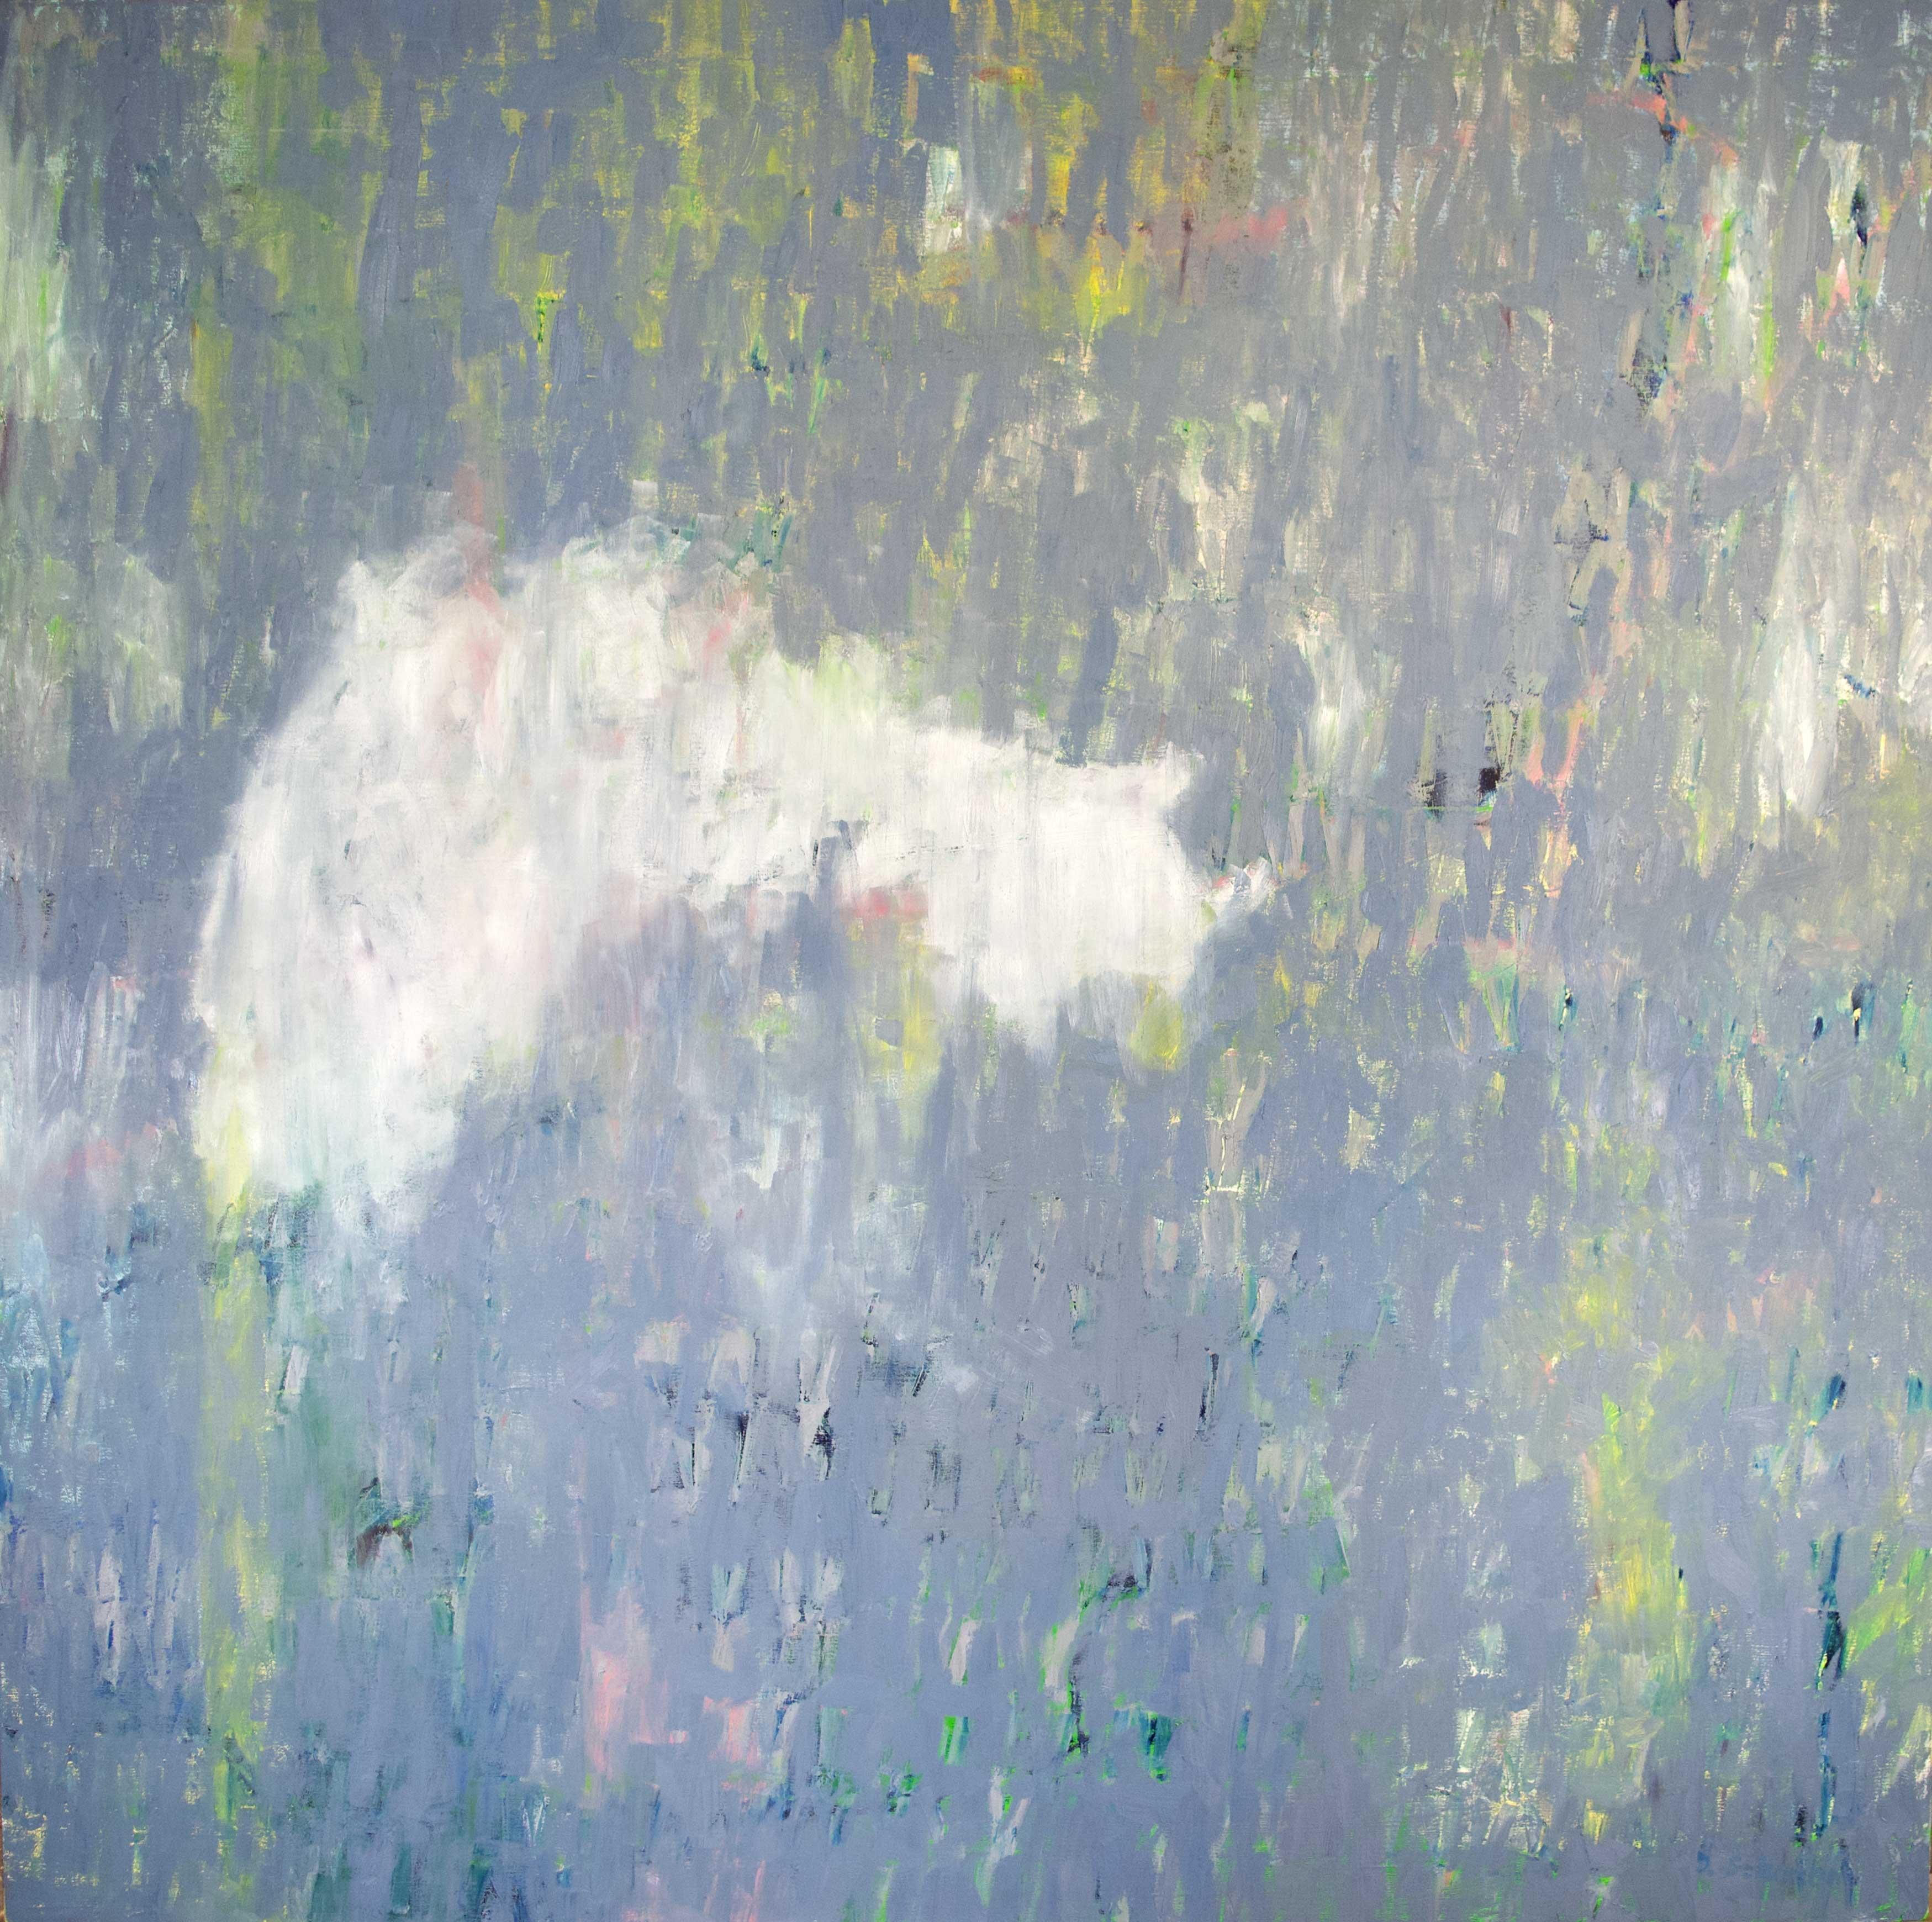 the Quiet Under the Day" ist ein Ölgemälde der amerikanischen Künstlerin Deirdre Schanen. Schanens Werke bewegen sich zwischen ungegenständlicher Abstraktion und repräsentativer Landschaftsmalerei. Dieses Beispiel fällt in die erste dieser